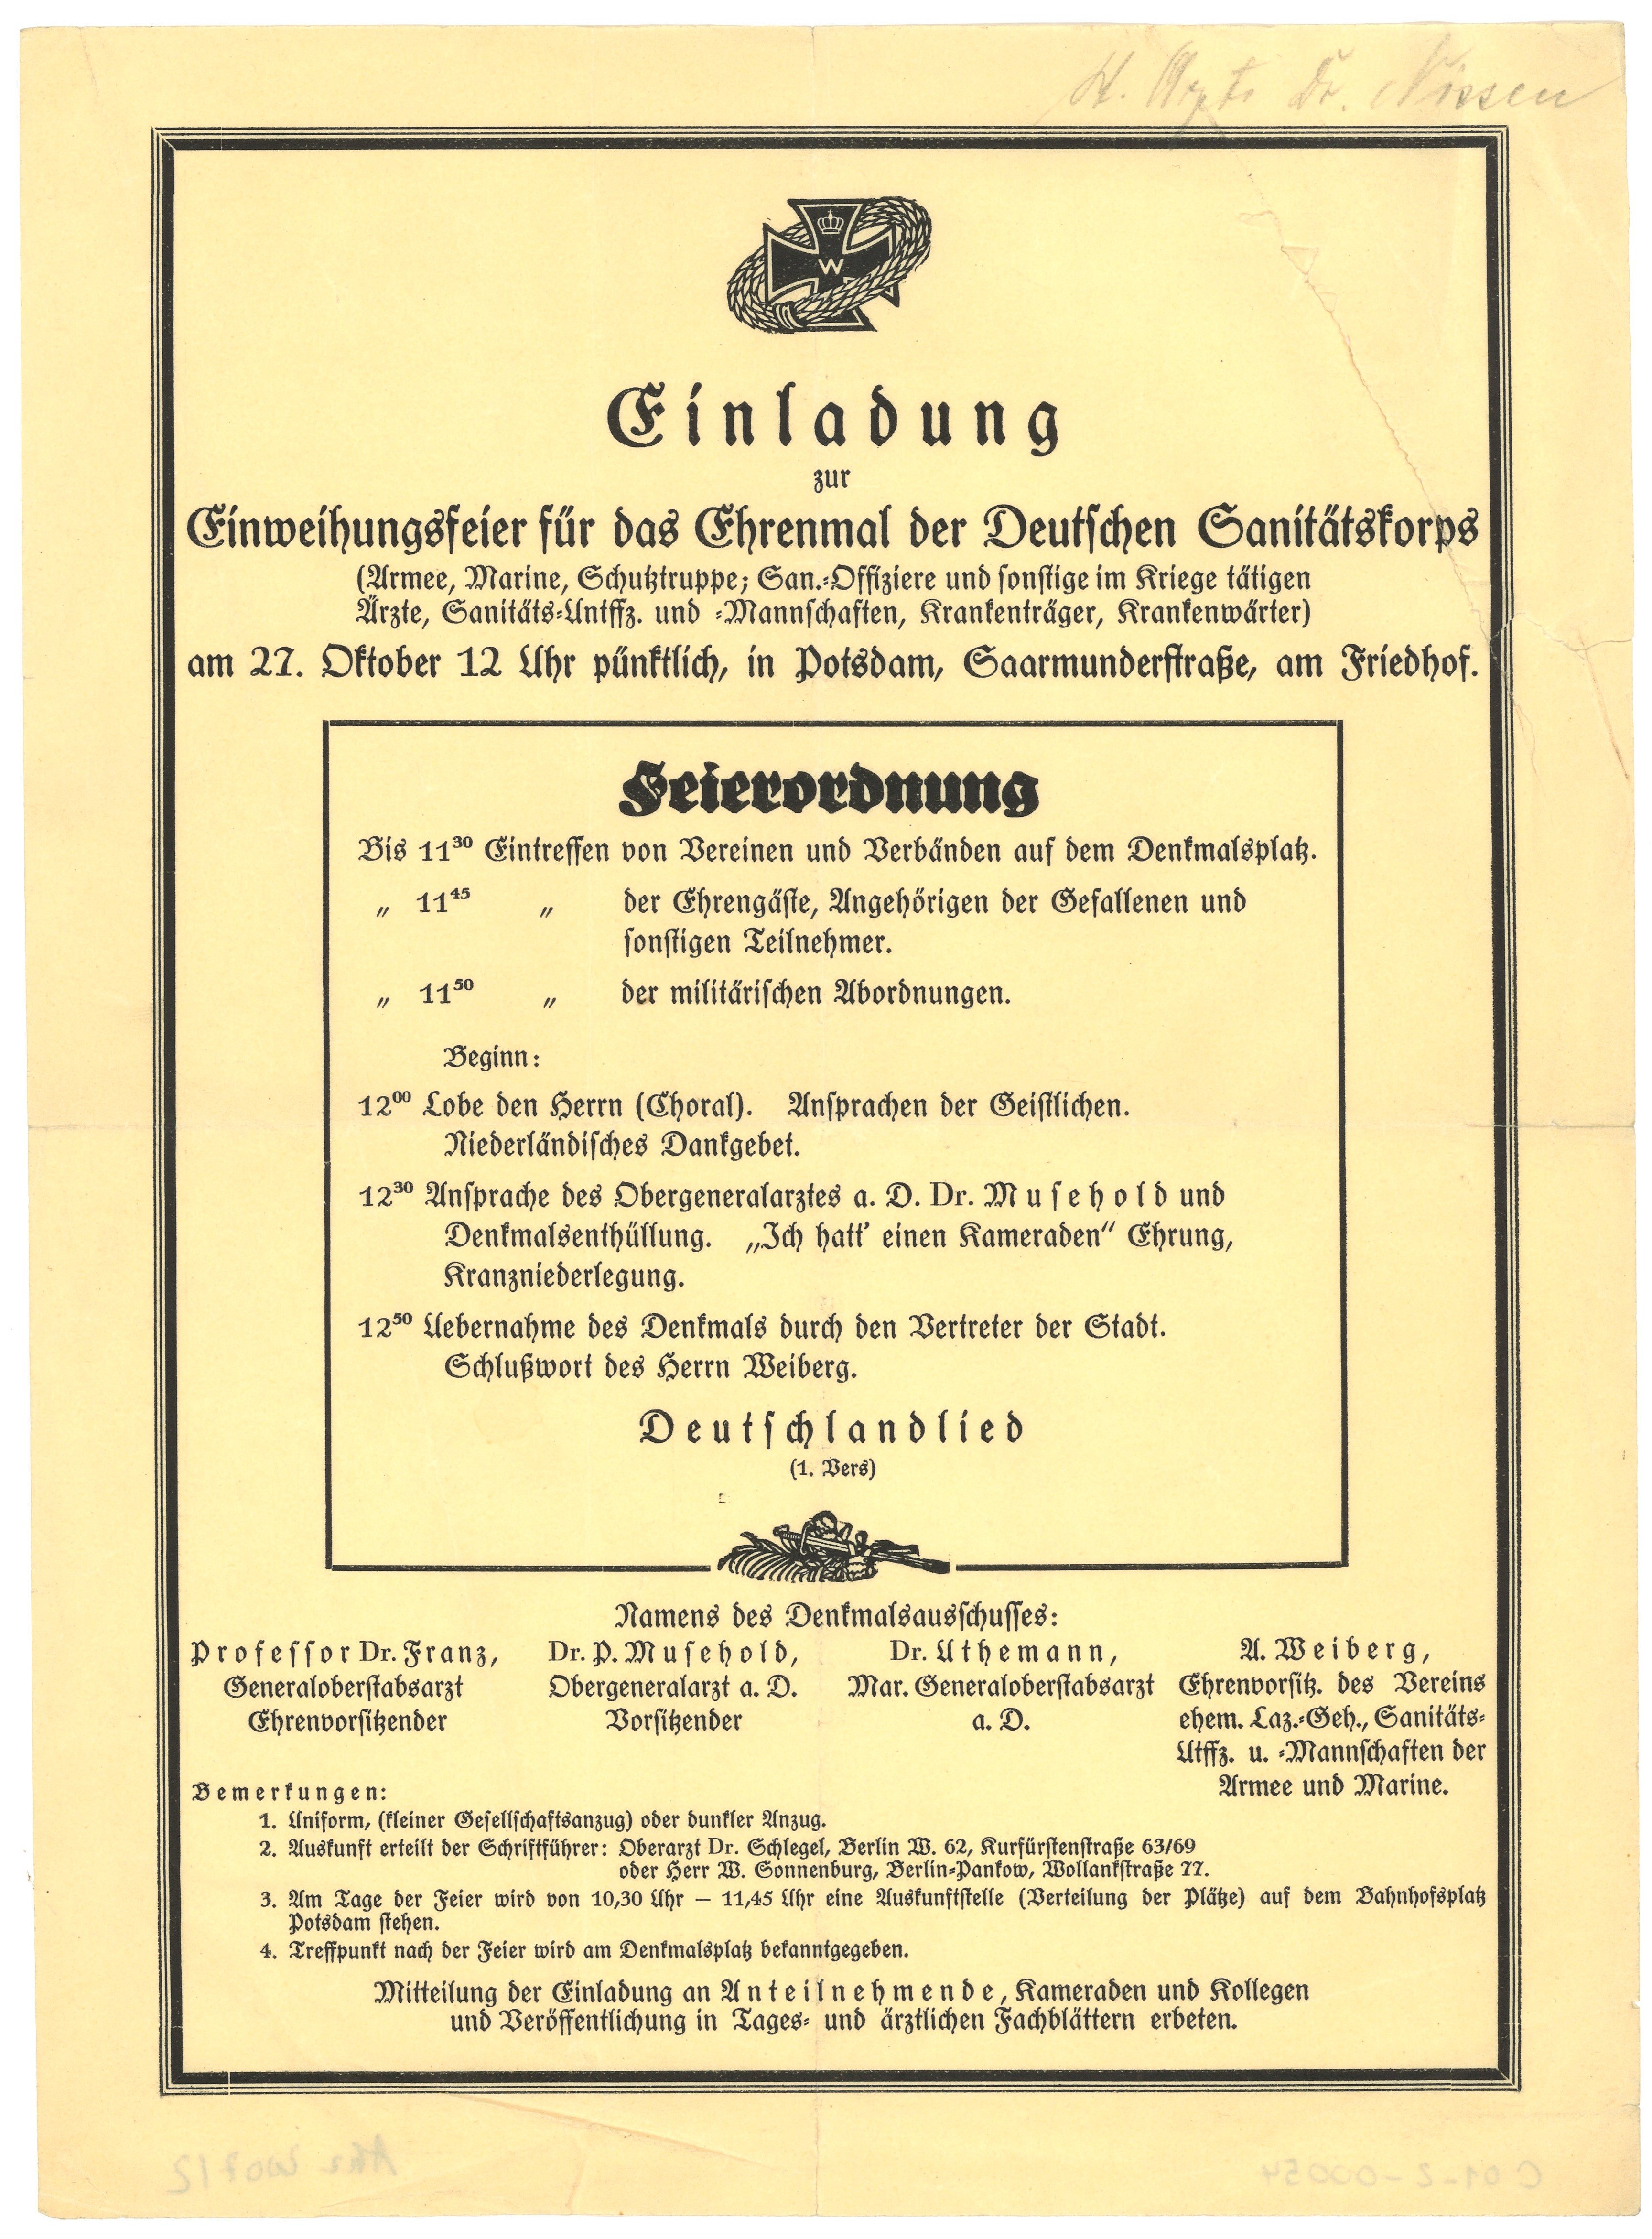 Einladung und Programm zur Einweihungsfeier für das Ehrenmal des Deutschen Sanitätskorps in Potsdam 1929 (Landesgeschichtliche Vereinigung für die Mark Brandenburg e.V., Archiv CC BY)